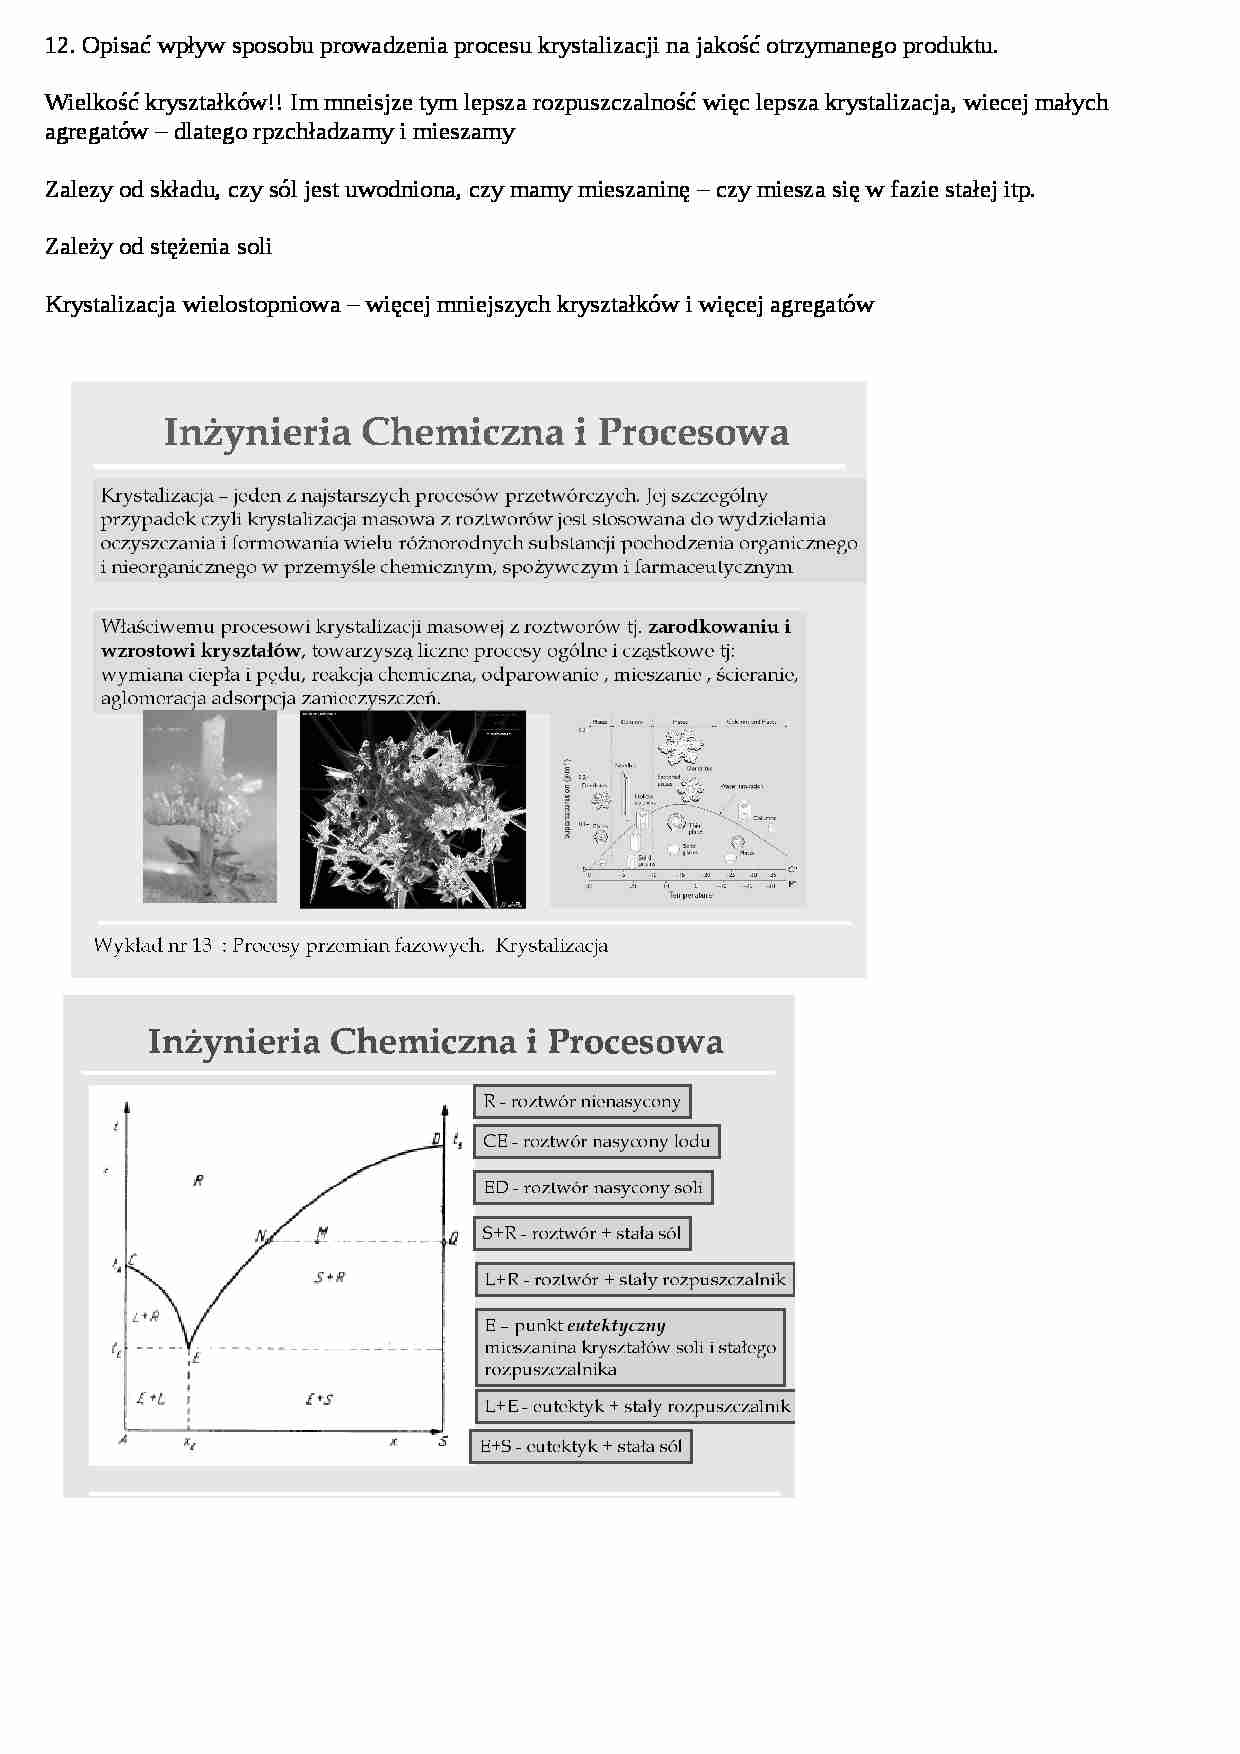 Inżynieria chemiczna - ćwiczenia - Krystalizacja - strona 1